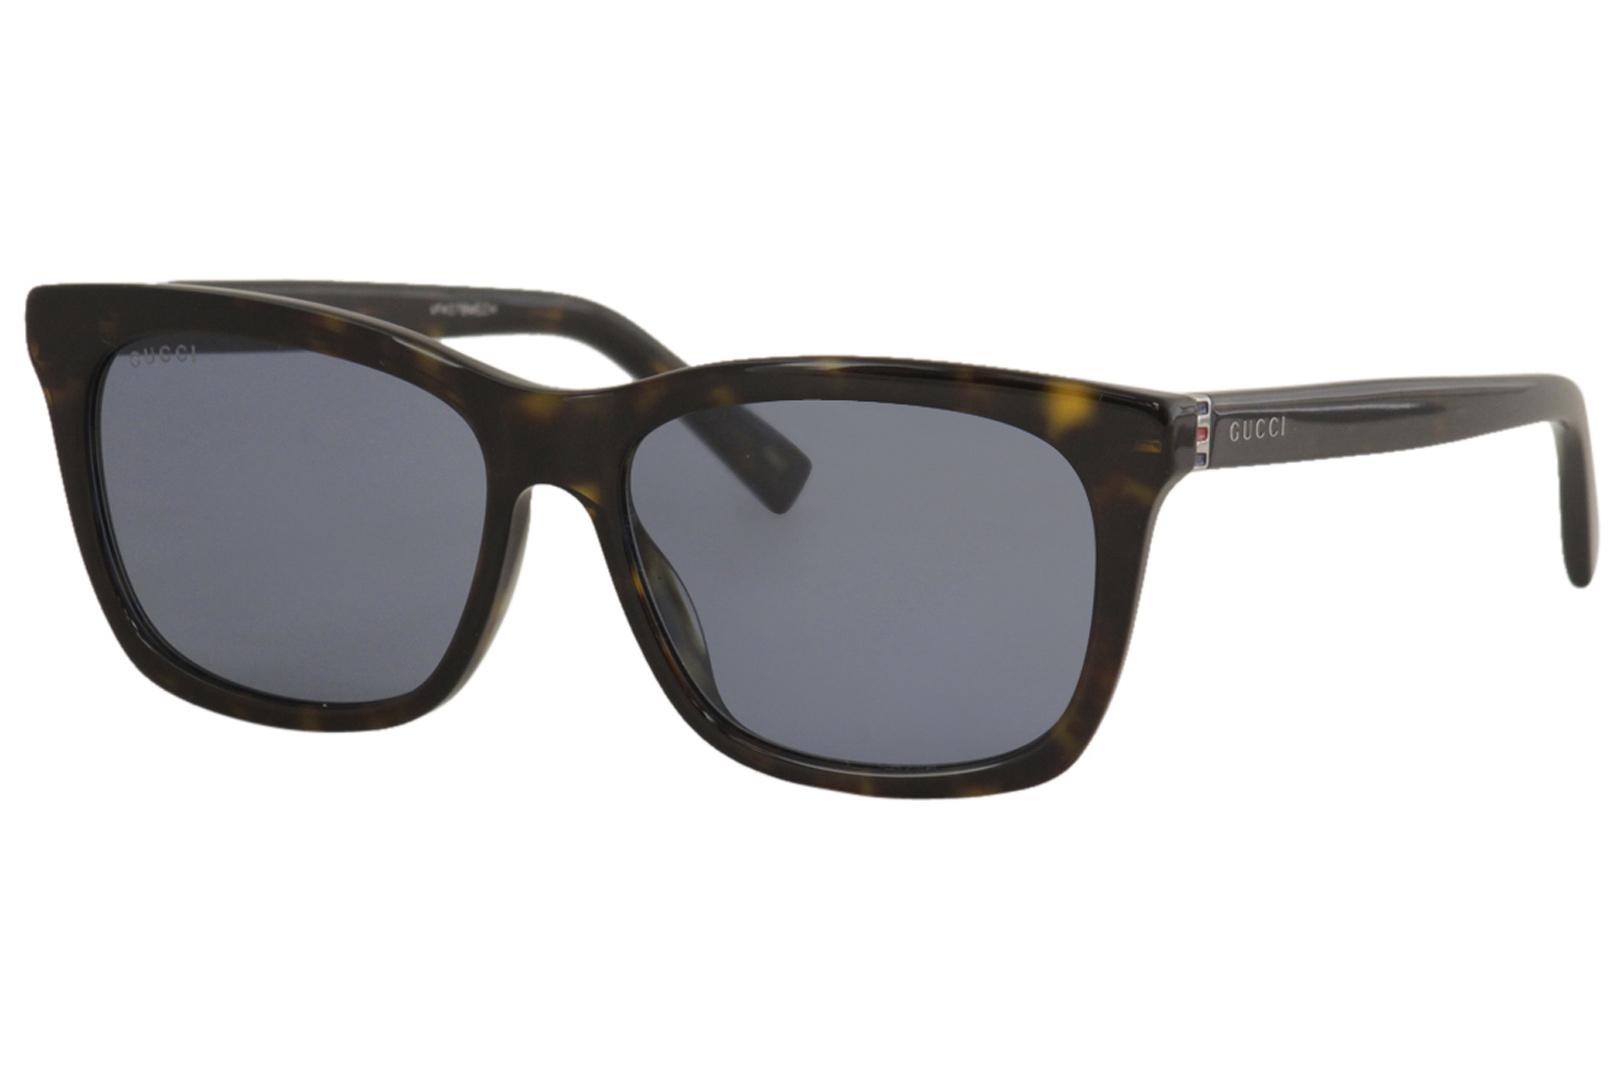 Gucci Black 56 mm Polarized Men's Sunglasses GG0449S-002 56